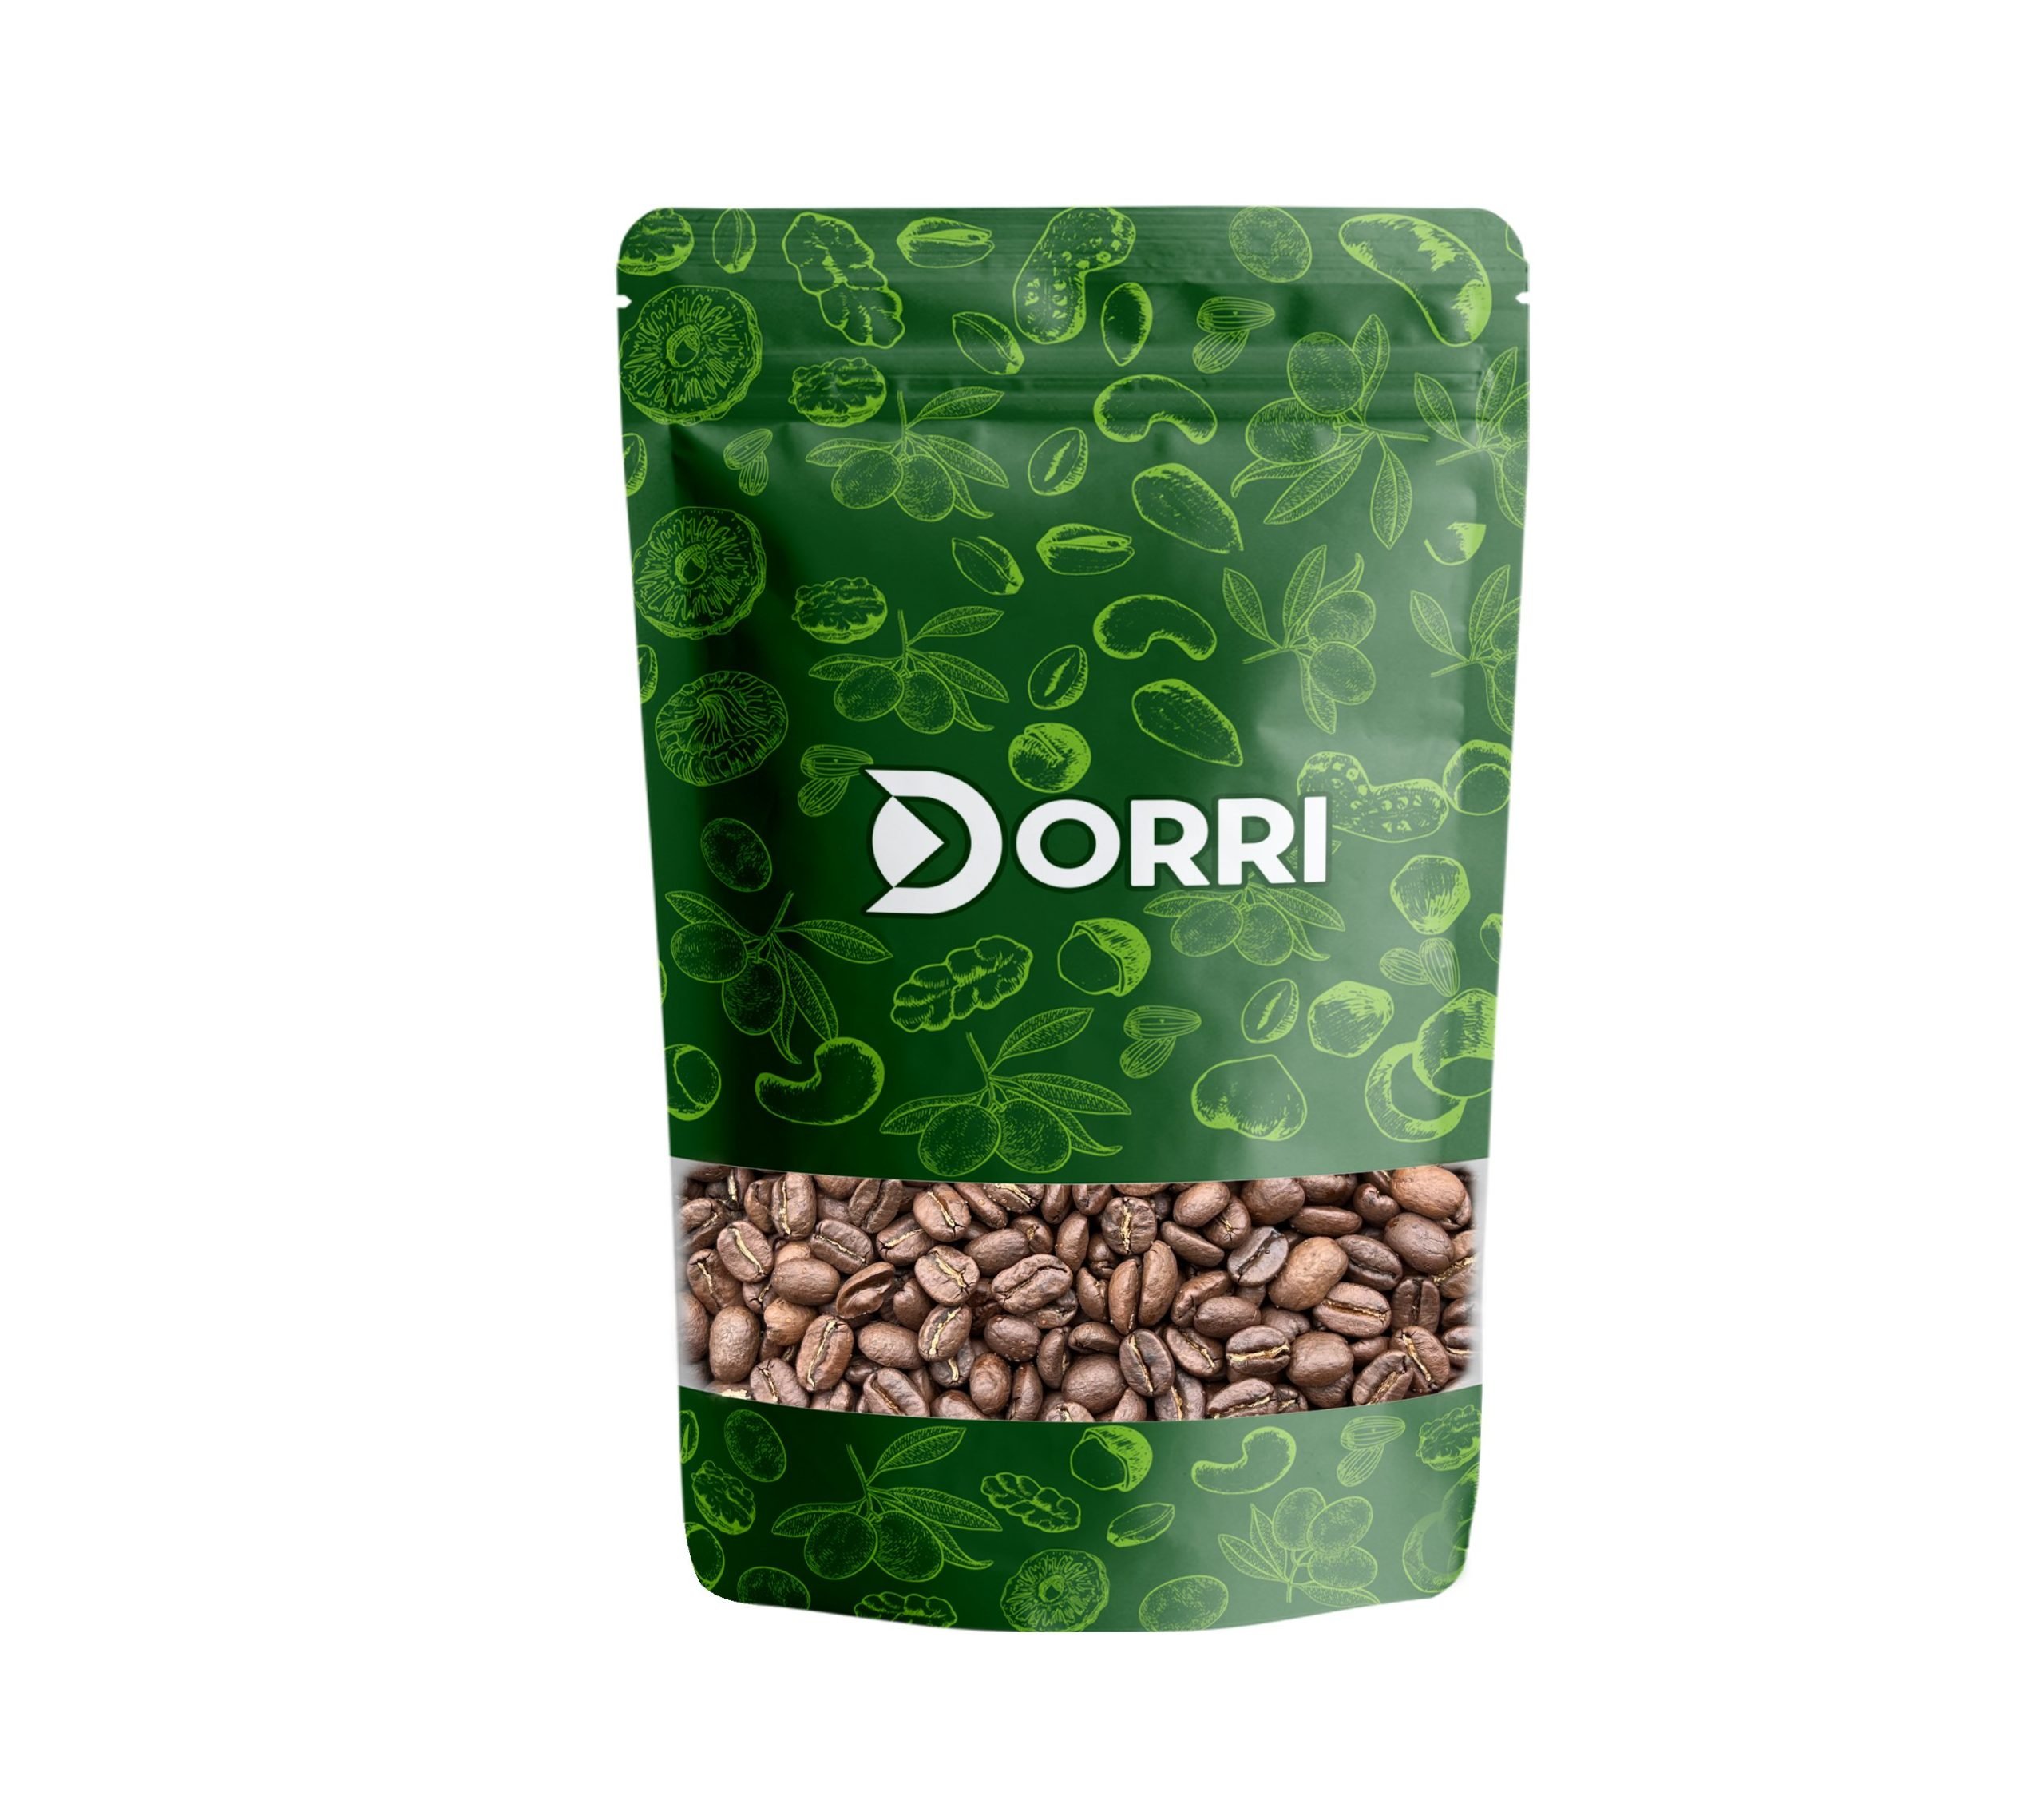 Dorri - Colombian Supremo Coffee